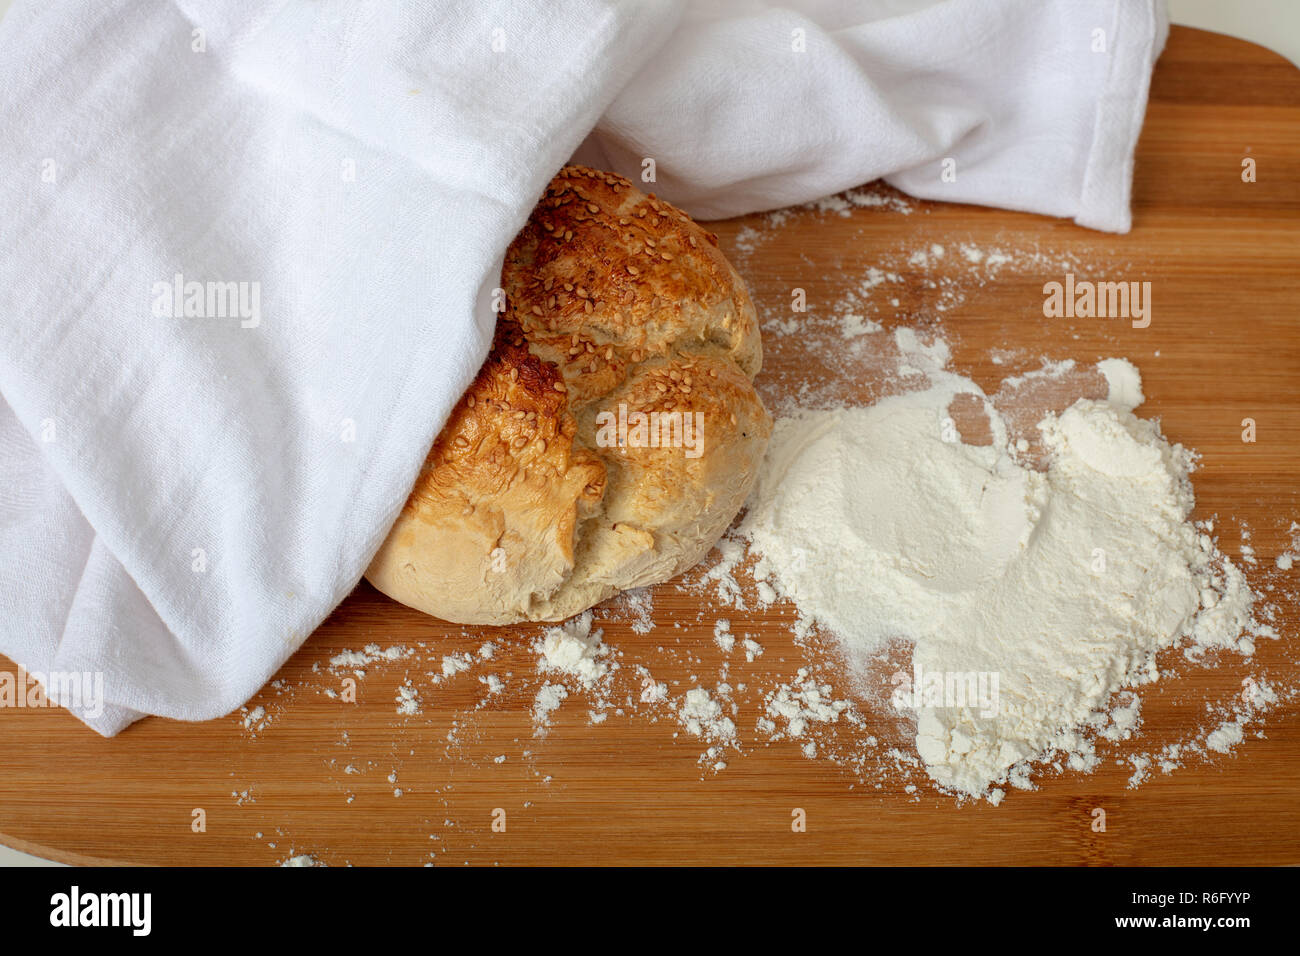 Pane appena sfornato il pane fatto in casa con farina bianca sul tagliere di legno ad alto angolo di visione con spazio di copia Foto Stock